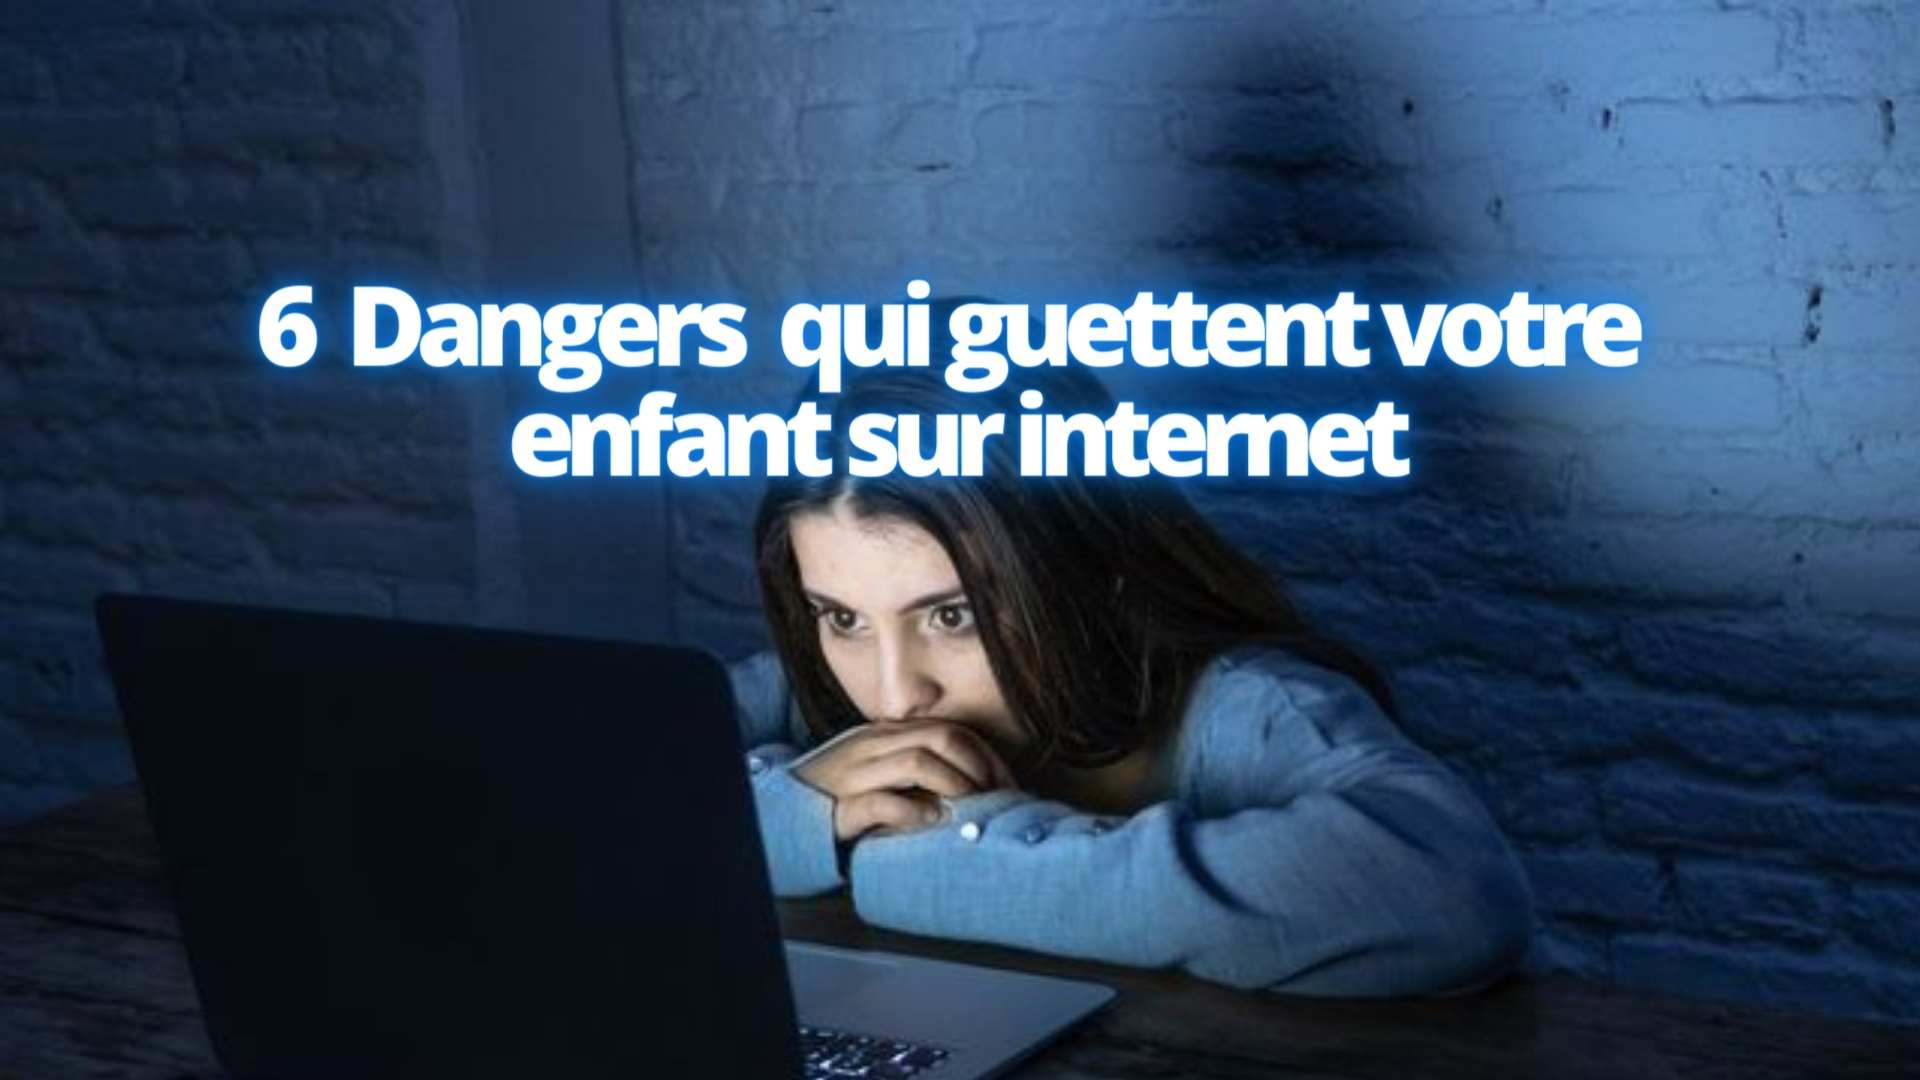 6 Dangers qui guettent votre enfant sur internet